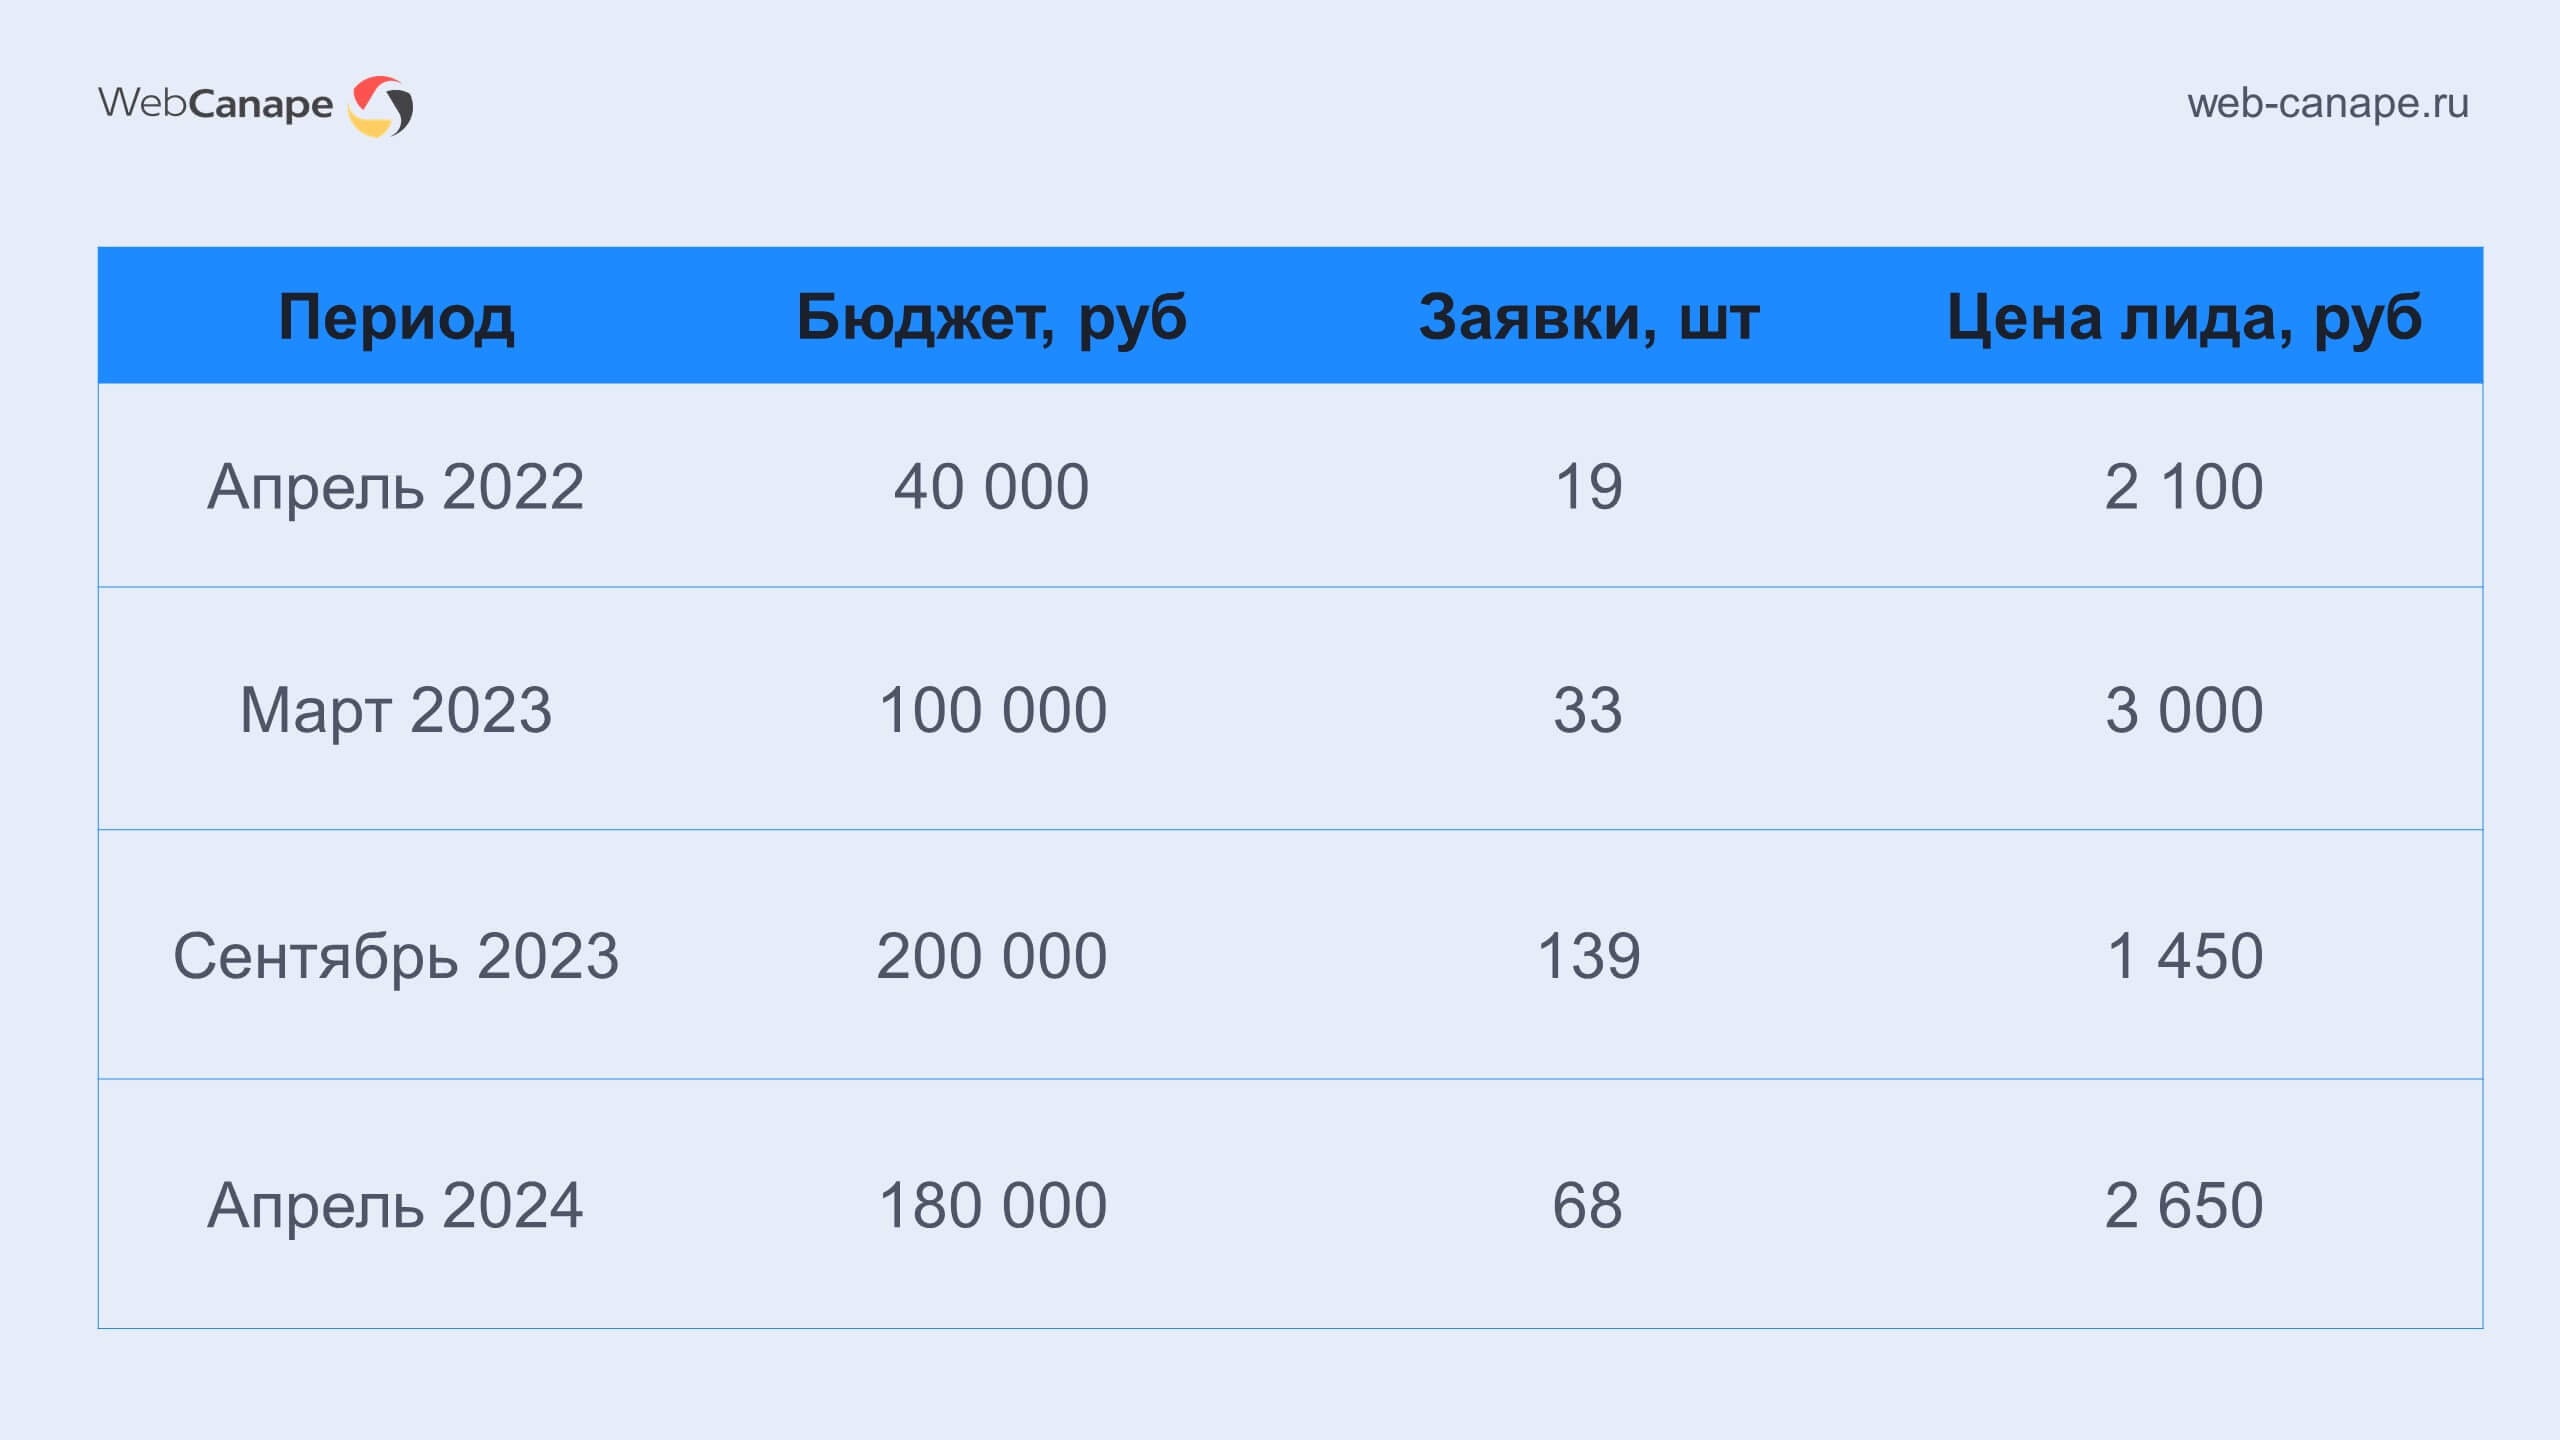 Результаты продвижения в Яндекс Директ до начала работ с WebCanape и после